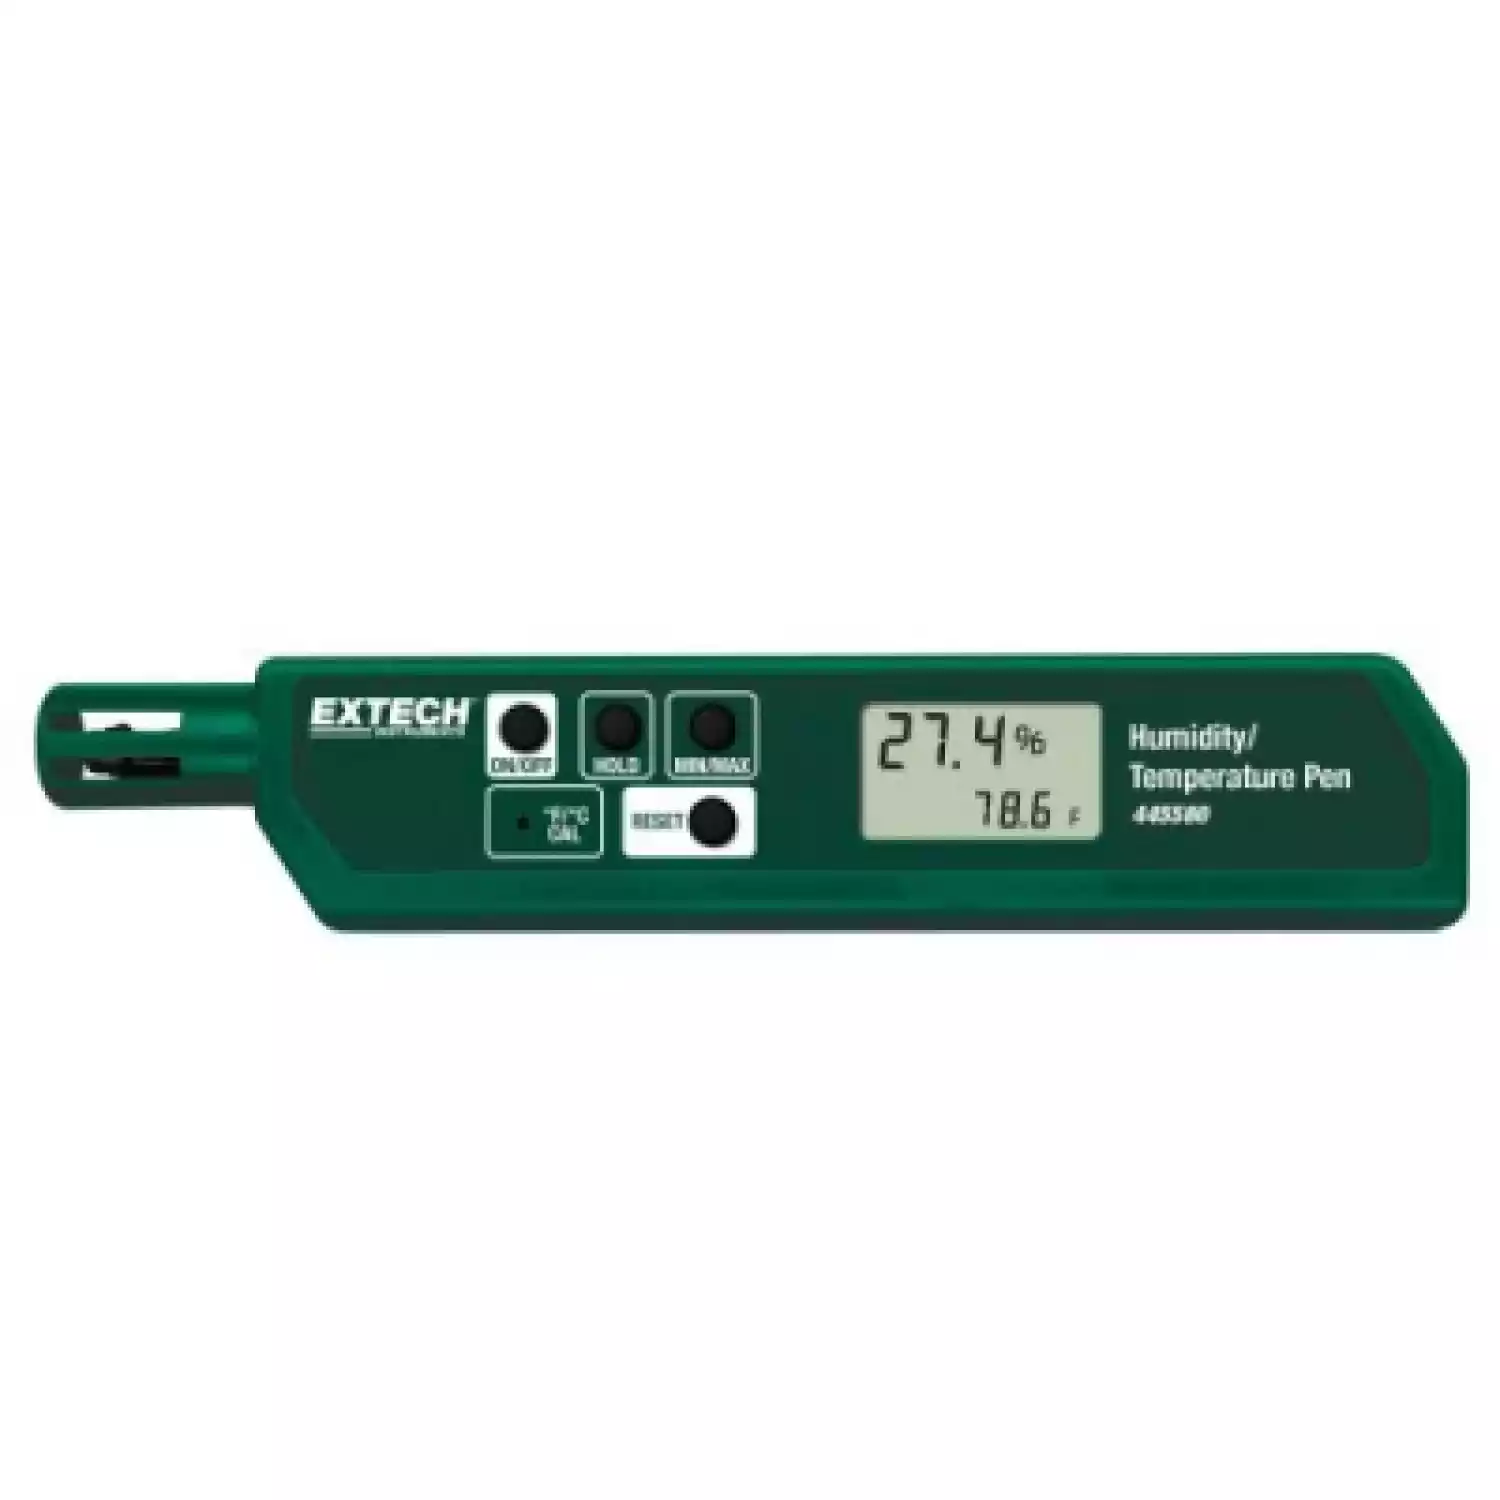 Прибор для измерения влажности/температуры Extech 445580 - 1